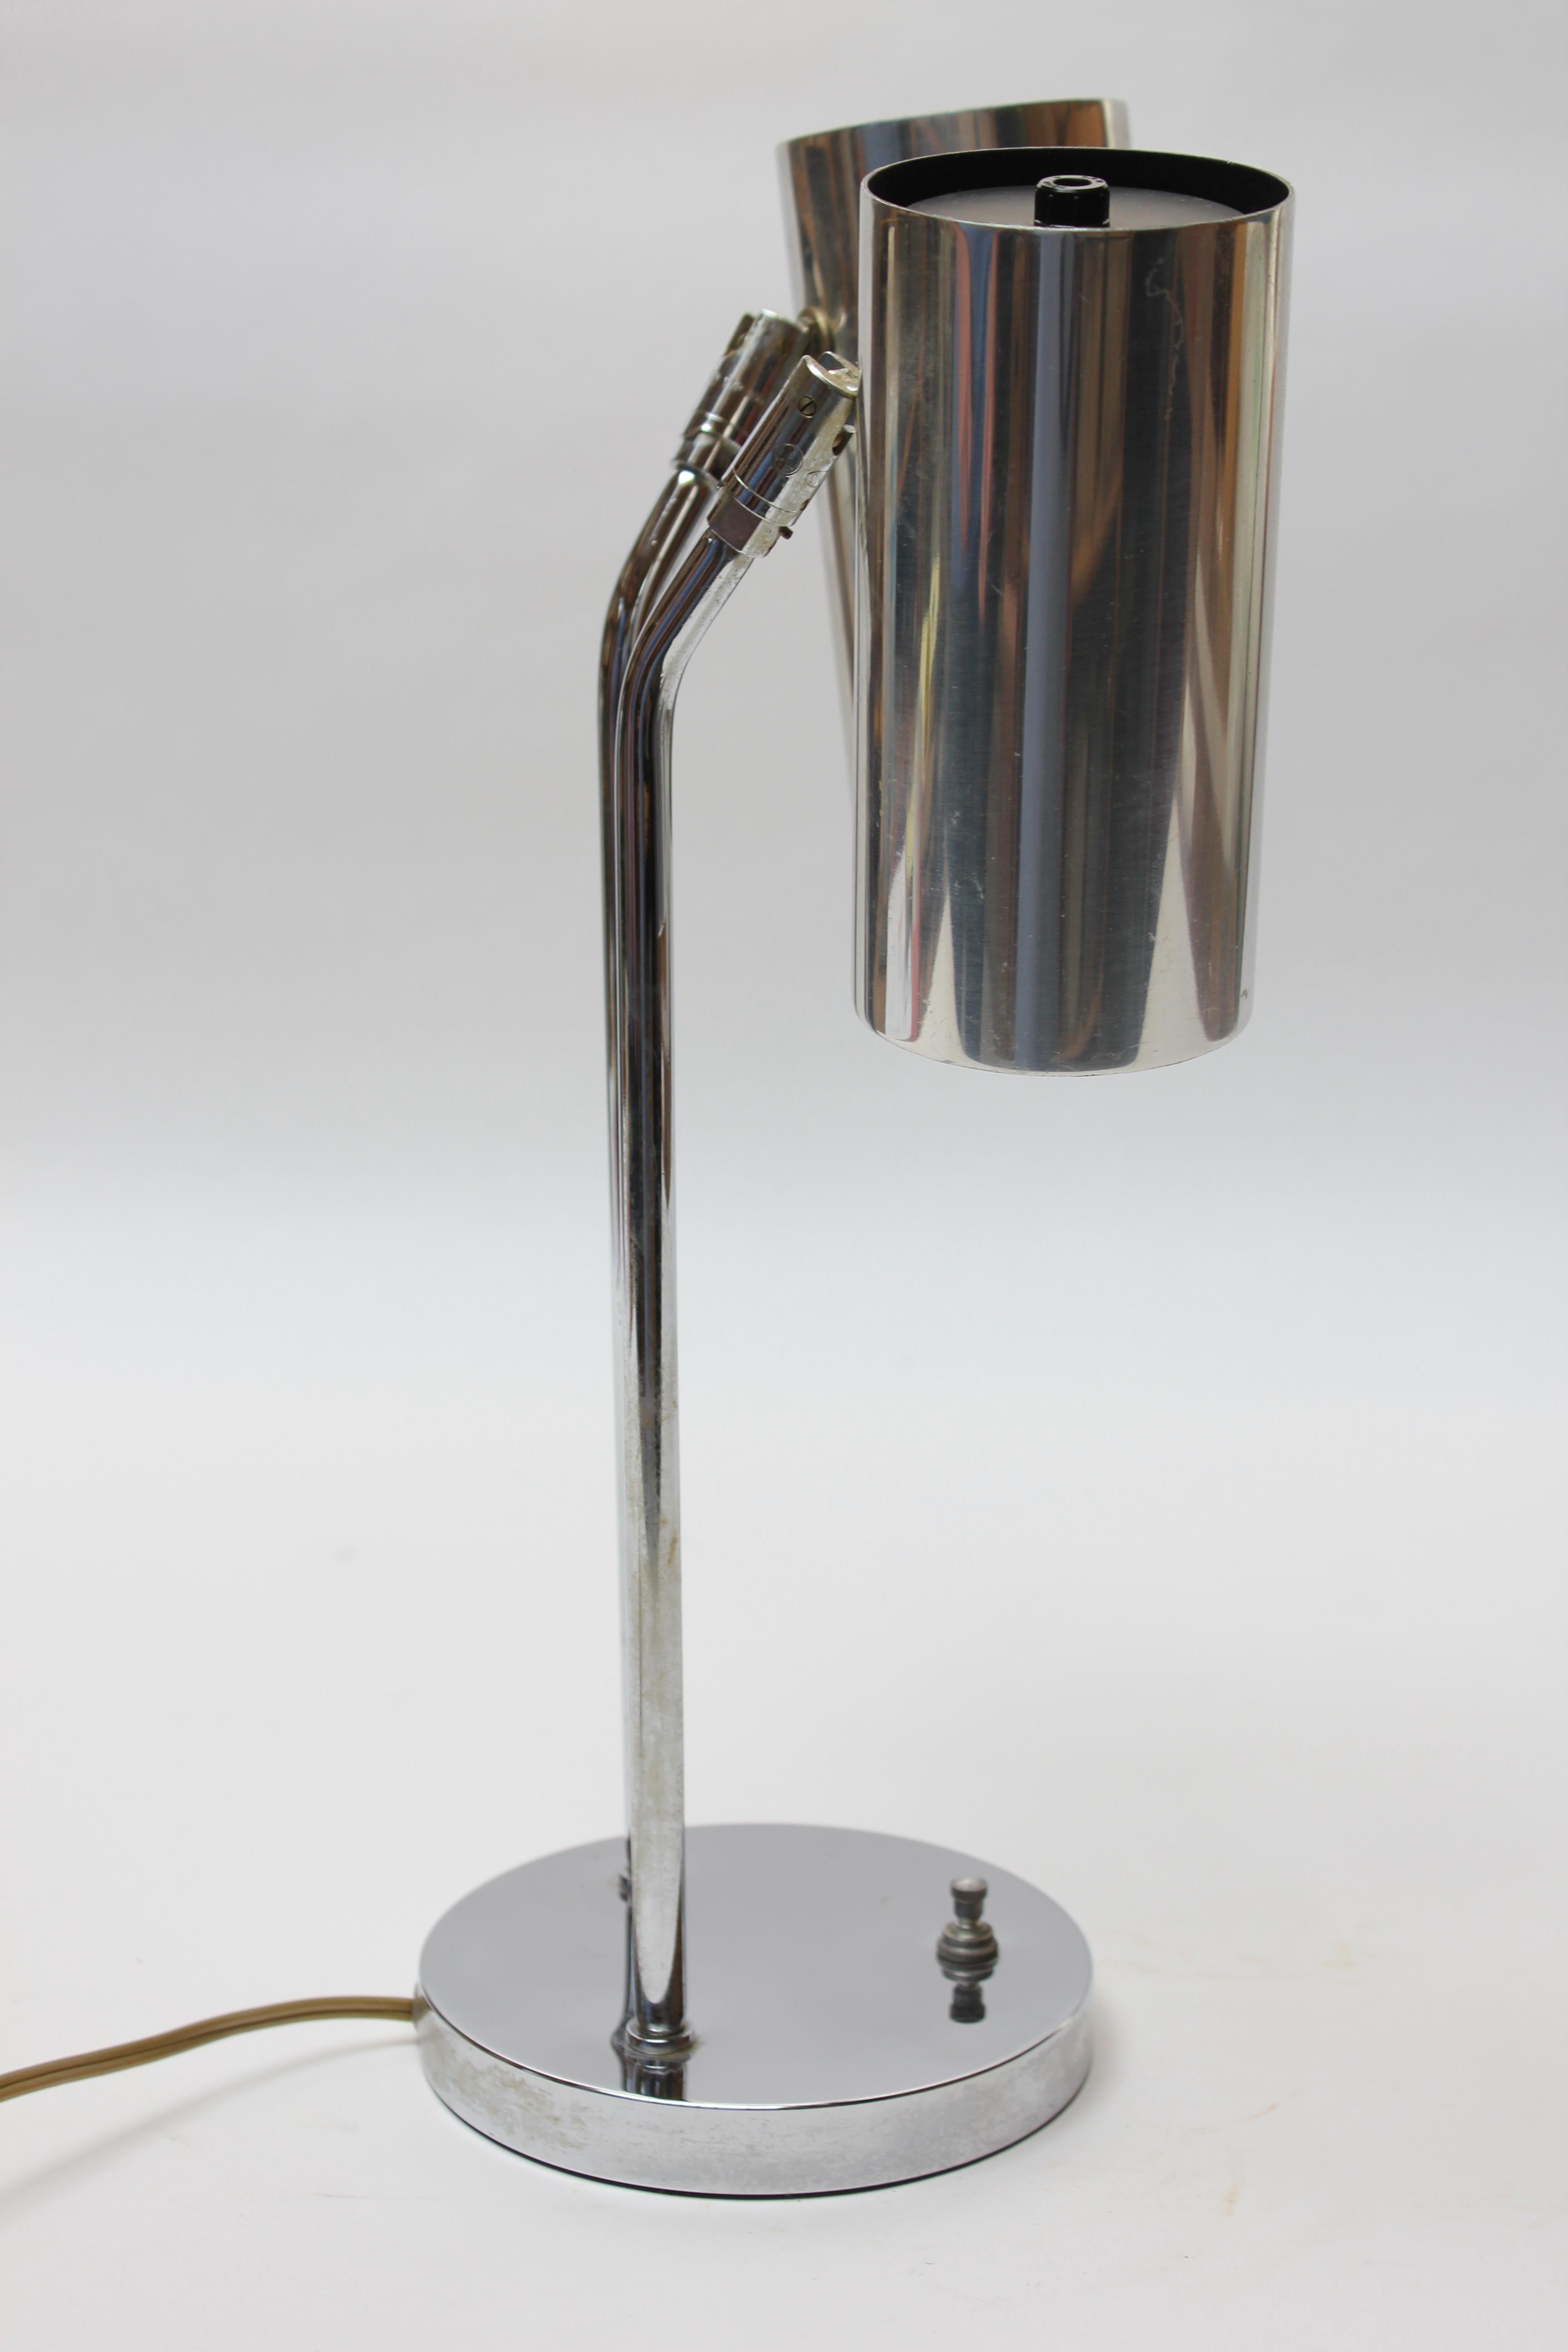 Vintage Double-Fixture Adjustable Chrome Table Lamp by Robert Sonneman For Sale 1